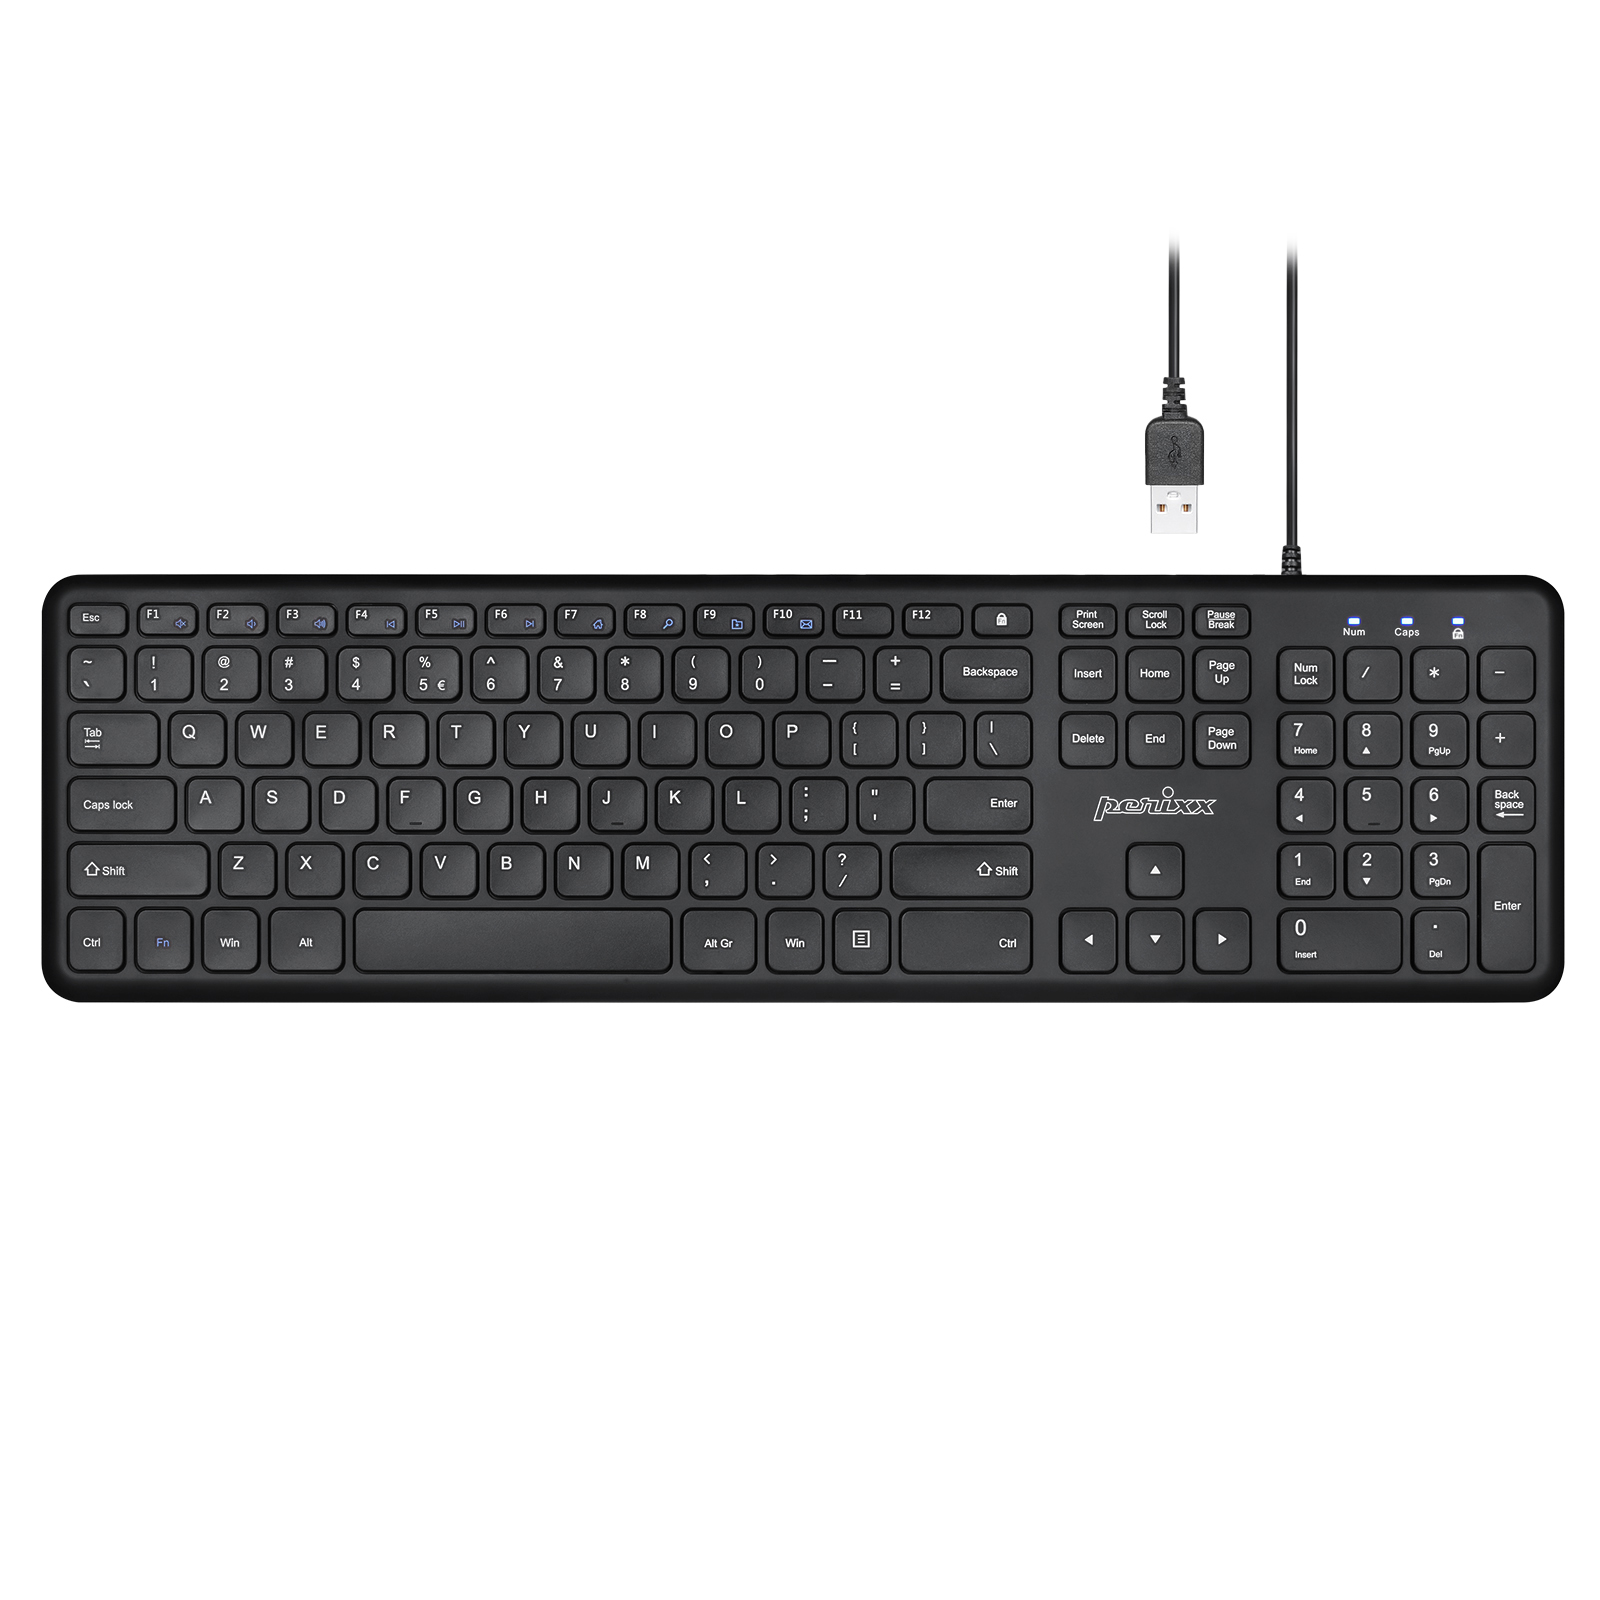 Perixx Periboard-210US - Wired Slim USB Keyboard - Quiet Scissor Keys - Black - image 1 of 7